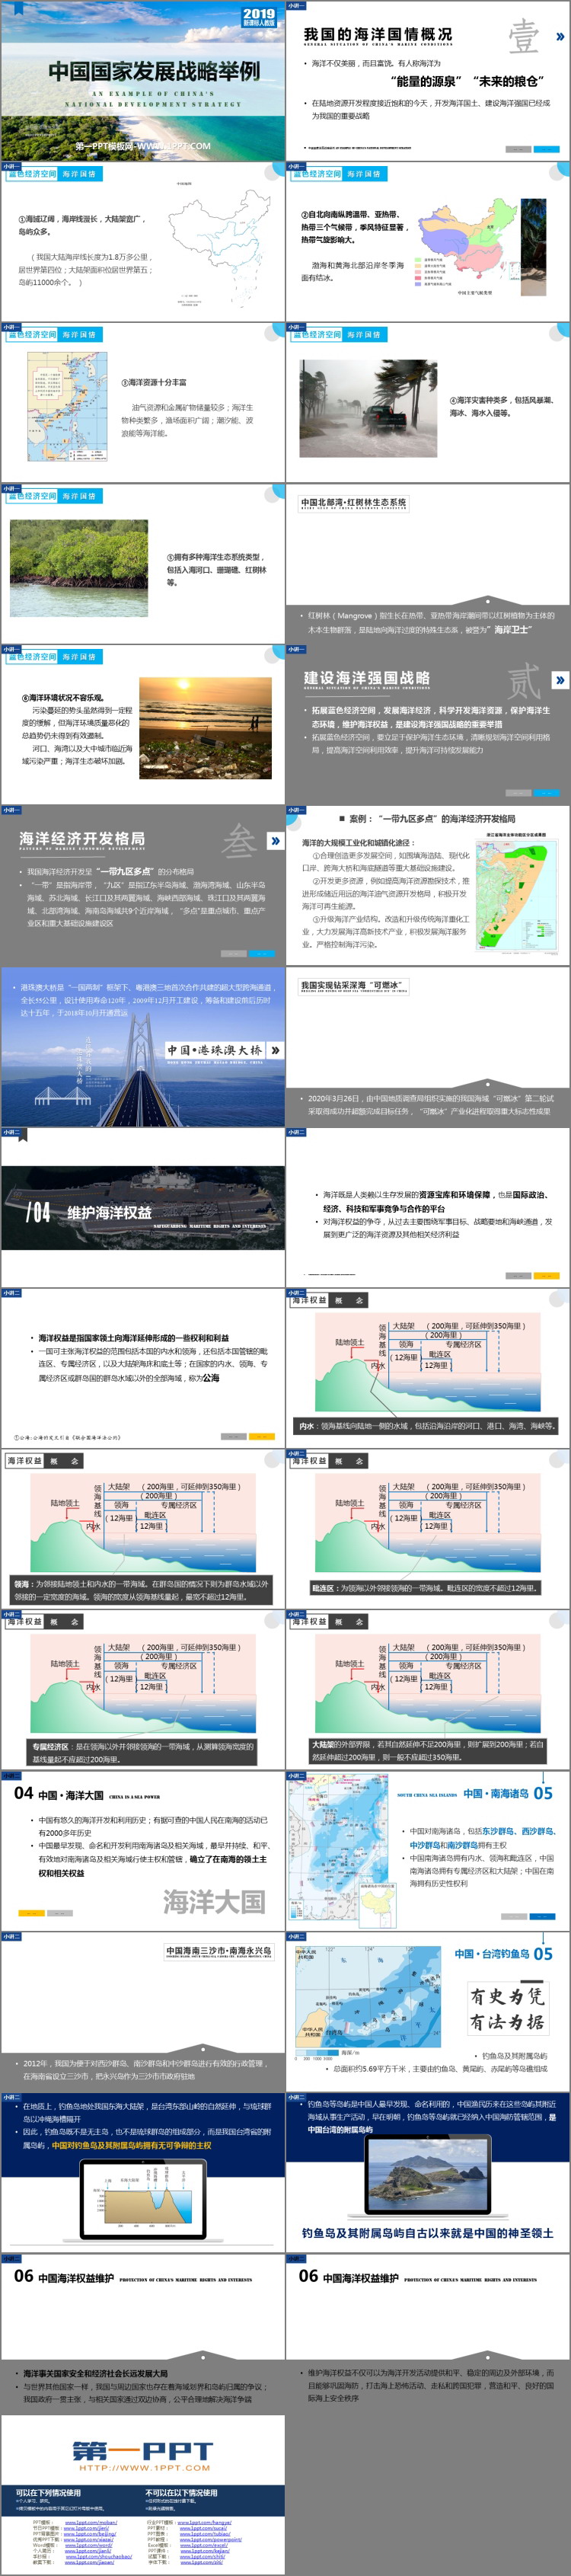 《中国国家发展战略举例》环境与发展PPT教学课件-预览图02